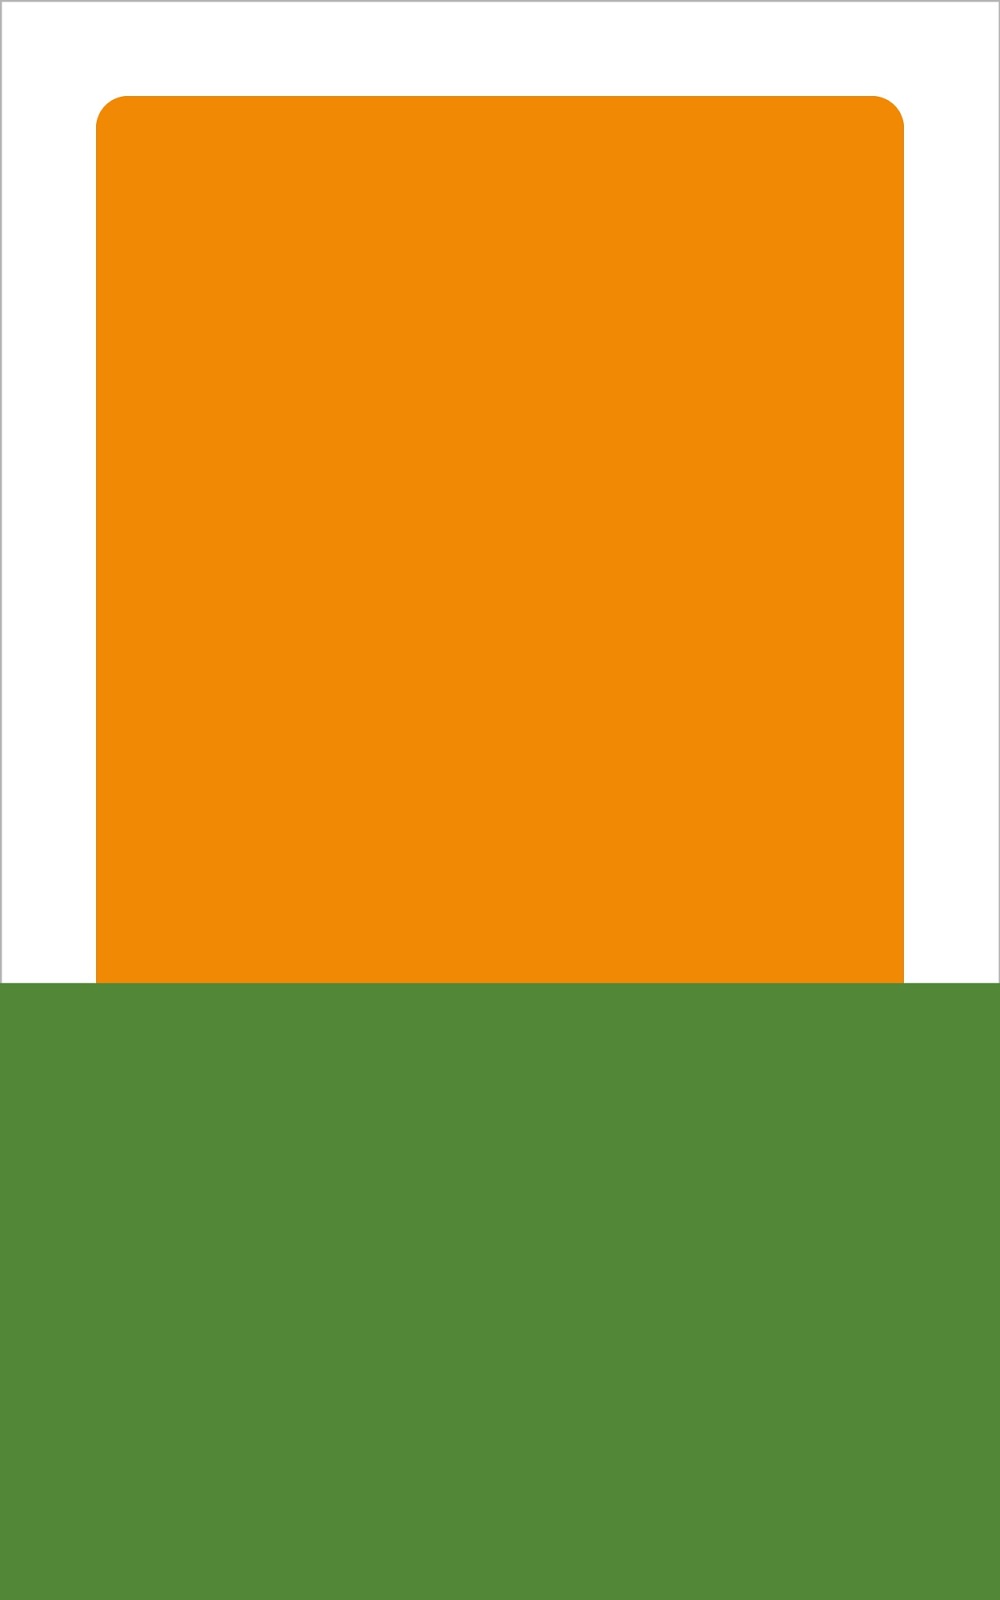 いーブックデザイン 電子書籍用表紙画像フリー素材 037 新書風デザイン オレンジ 帯あり